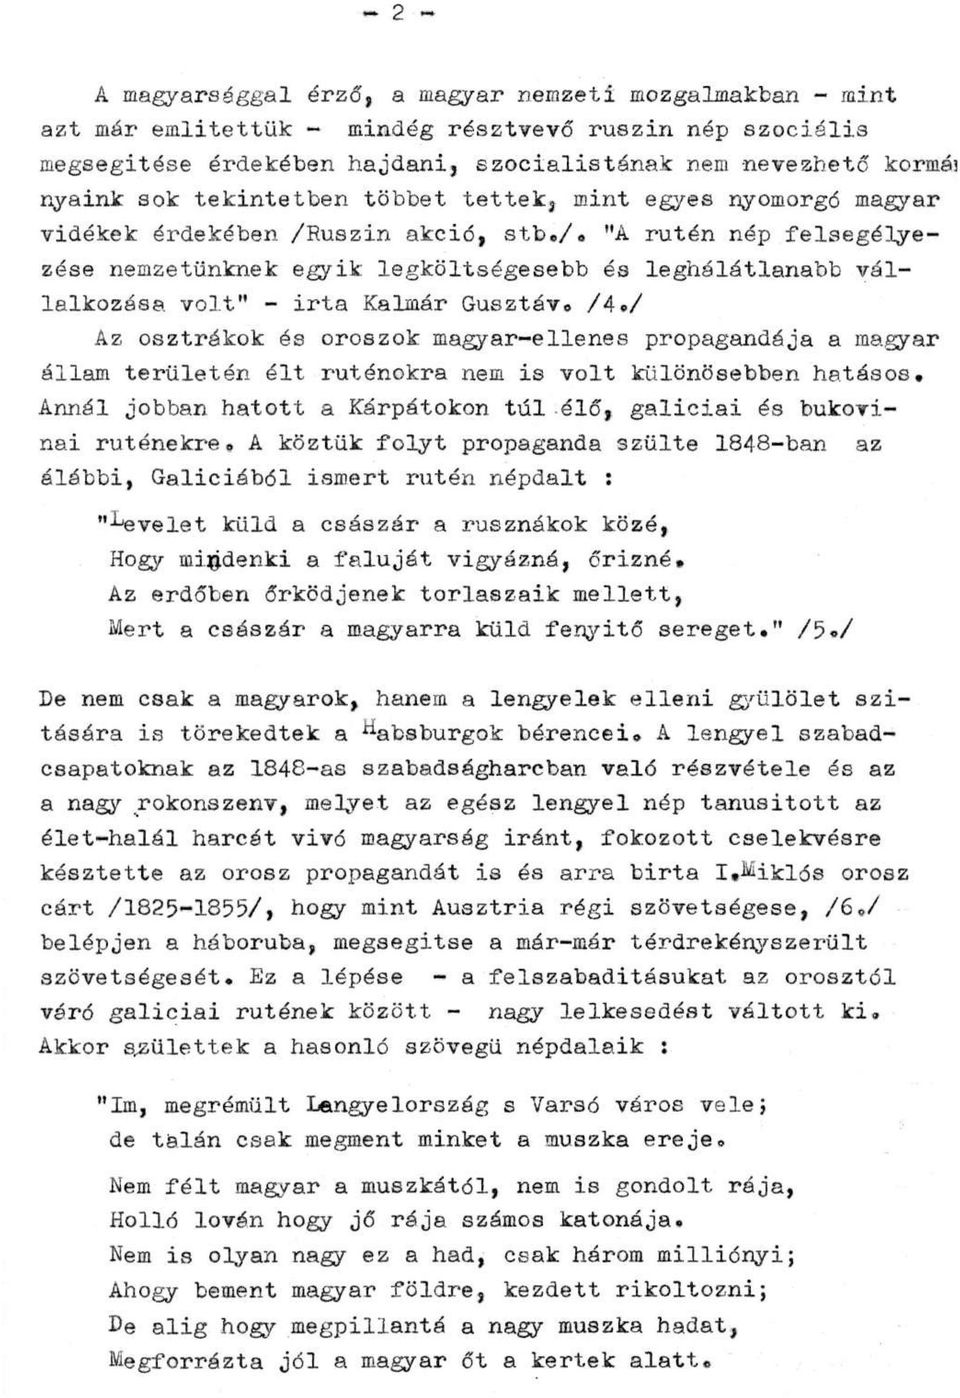 /4./ Az osztrákok és oroszok magyar-ellenes propagandája a magyar állam területén élt ruténokra nem is volt különösebben hatásos.